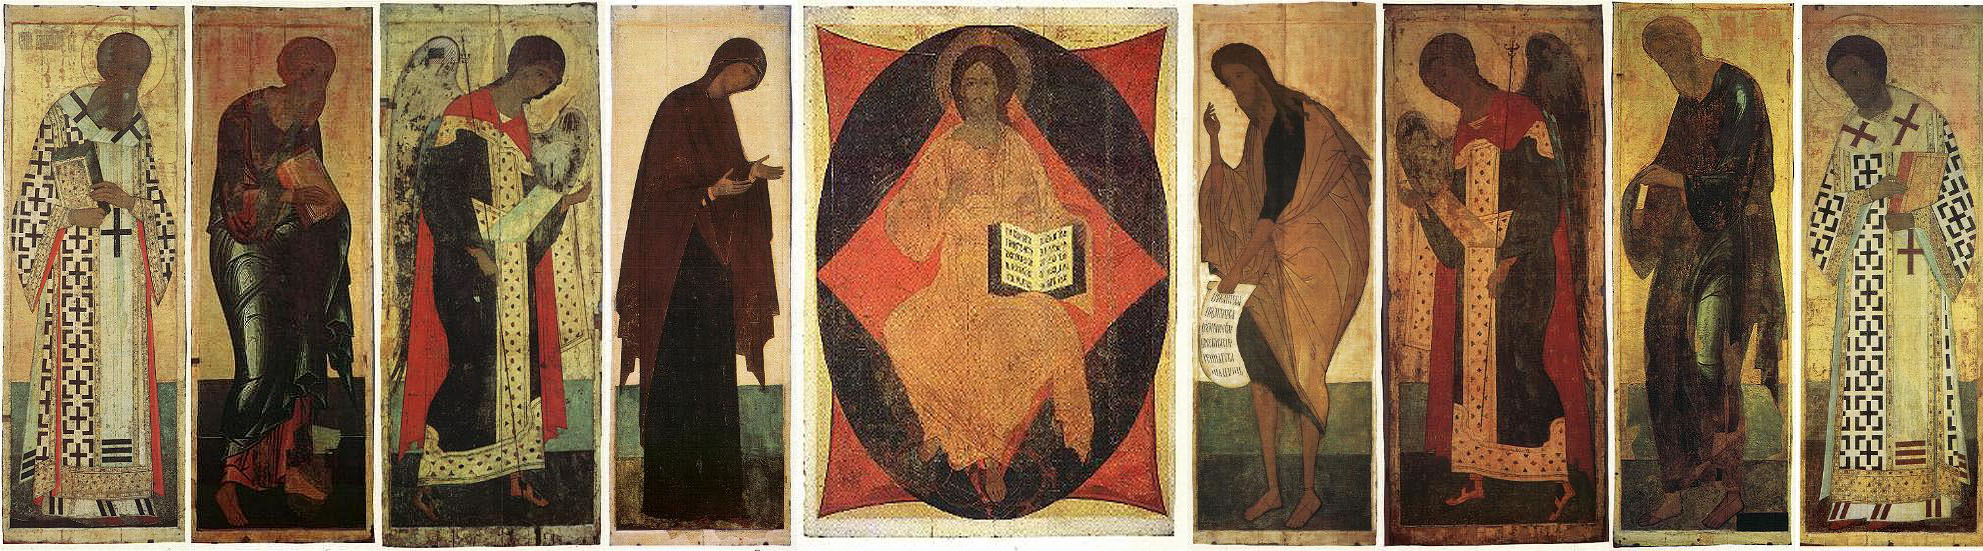 Андрей Рублев иконостас Успенского собора во Владимире